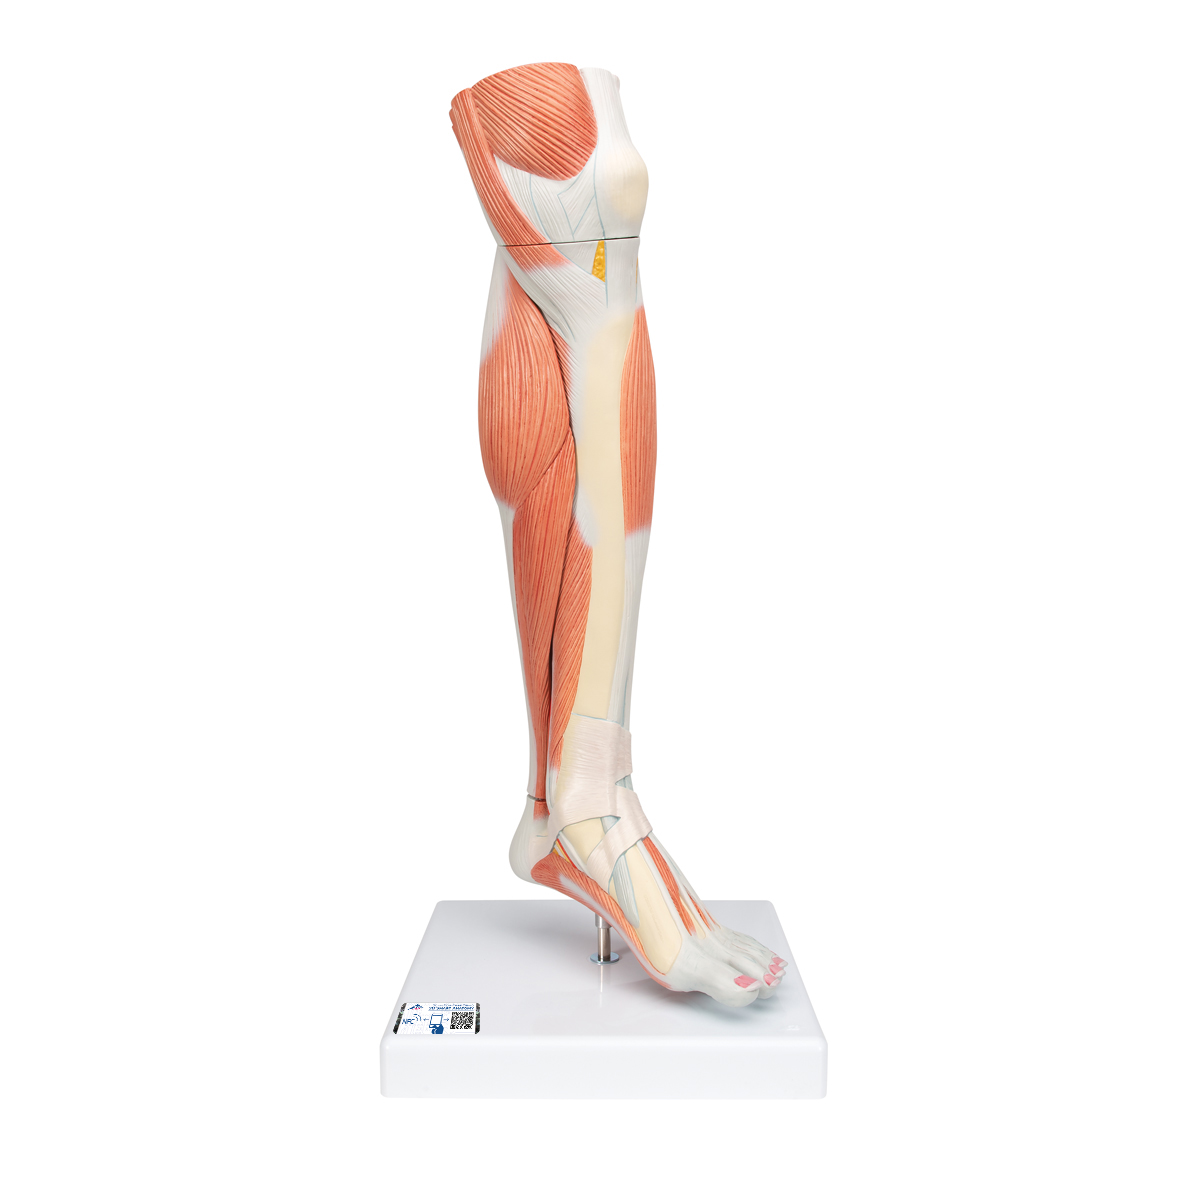 Beinmuskel Modell des Unterbeins "Luxus", 3-teilig - 3B Smart Anatomy, Bestellnummer 1000353, M22, 3B Scientific